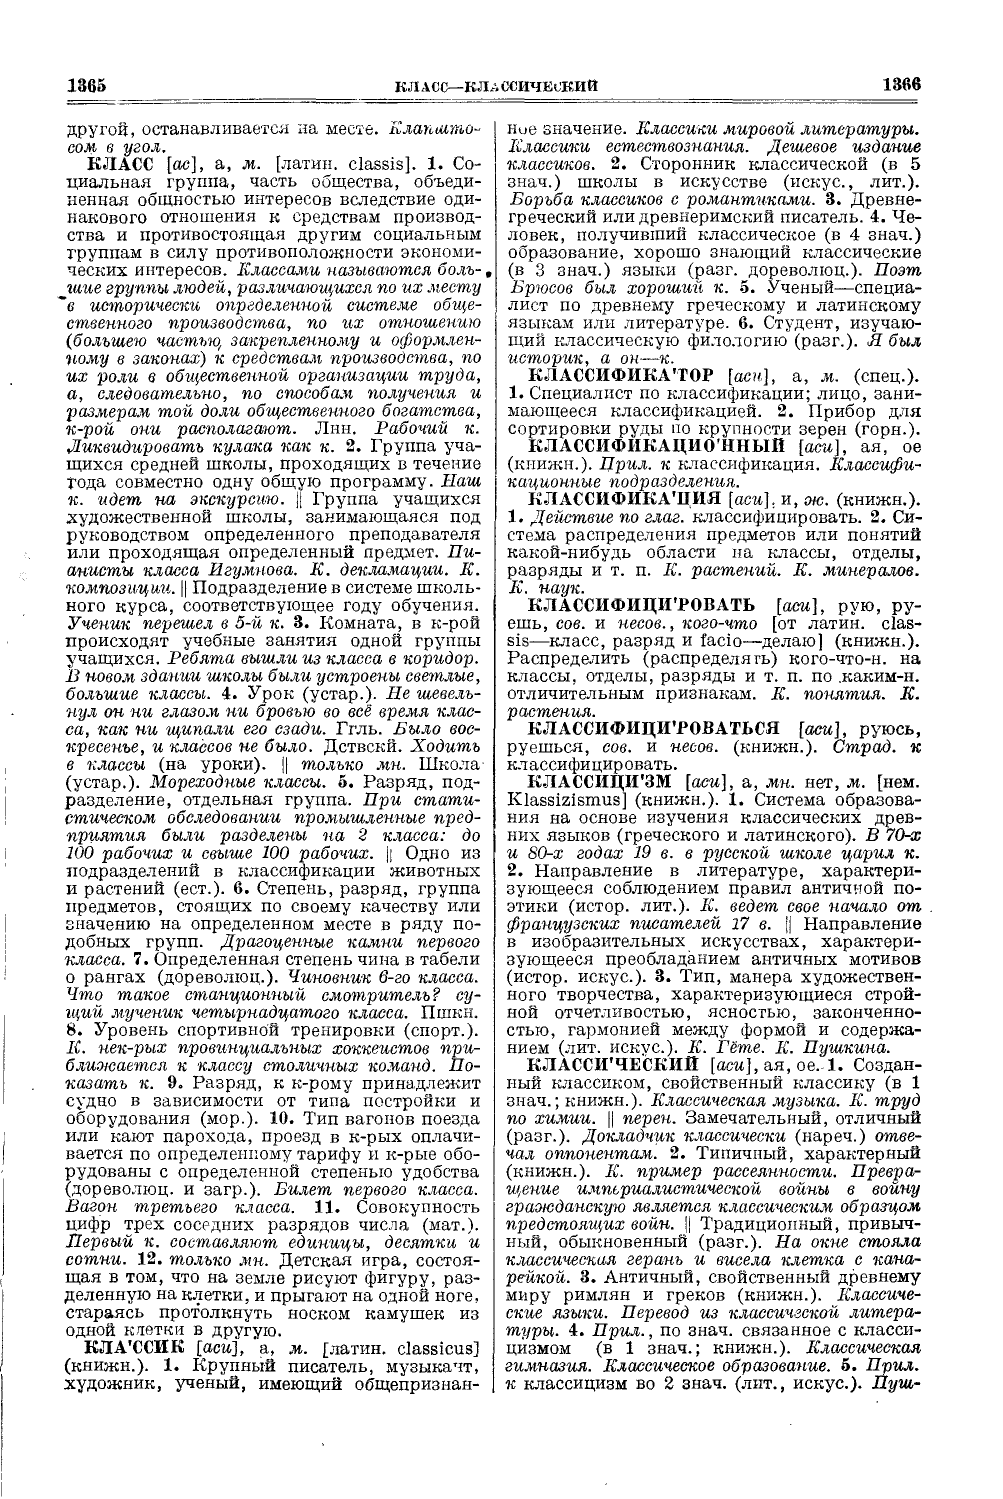 Фотокопия pdf / скан страницы 721 толкового словаря Ушакова (том 1)